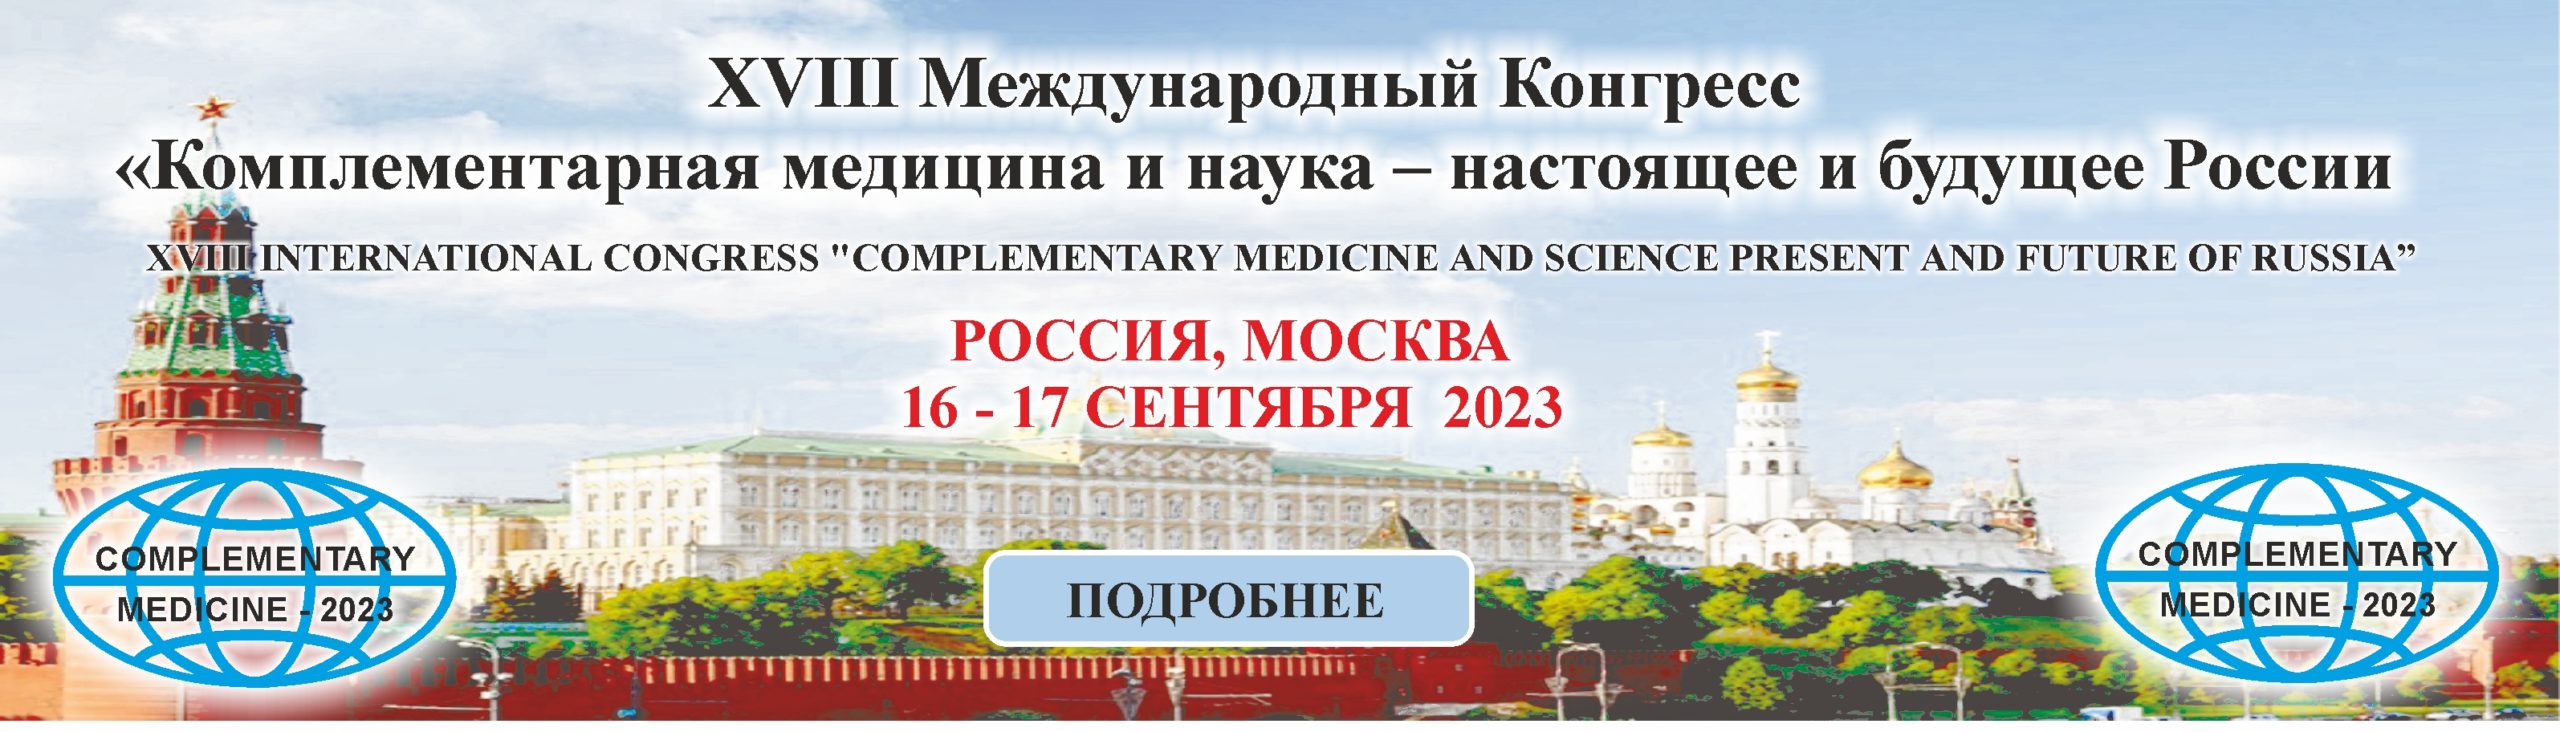 сайта ЗАГЛАВНАЯ scaled - 16 - 17 сентября 2023г. XVIII Международный конгресс «Комплементарная Медицина и наука  –  настоящее и будущее России»